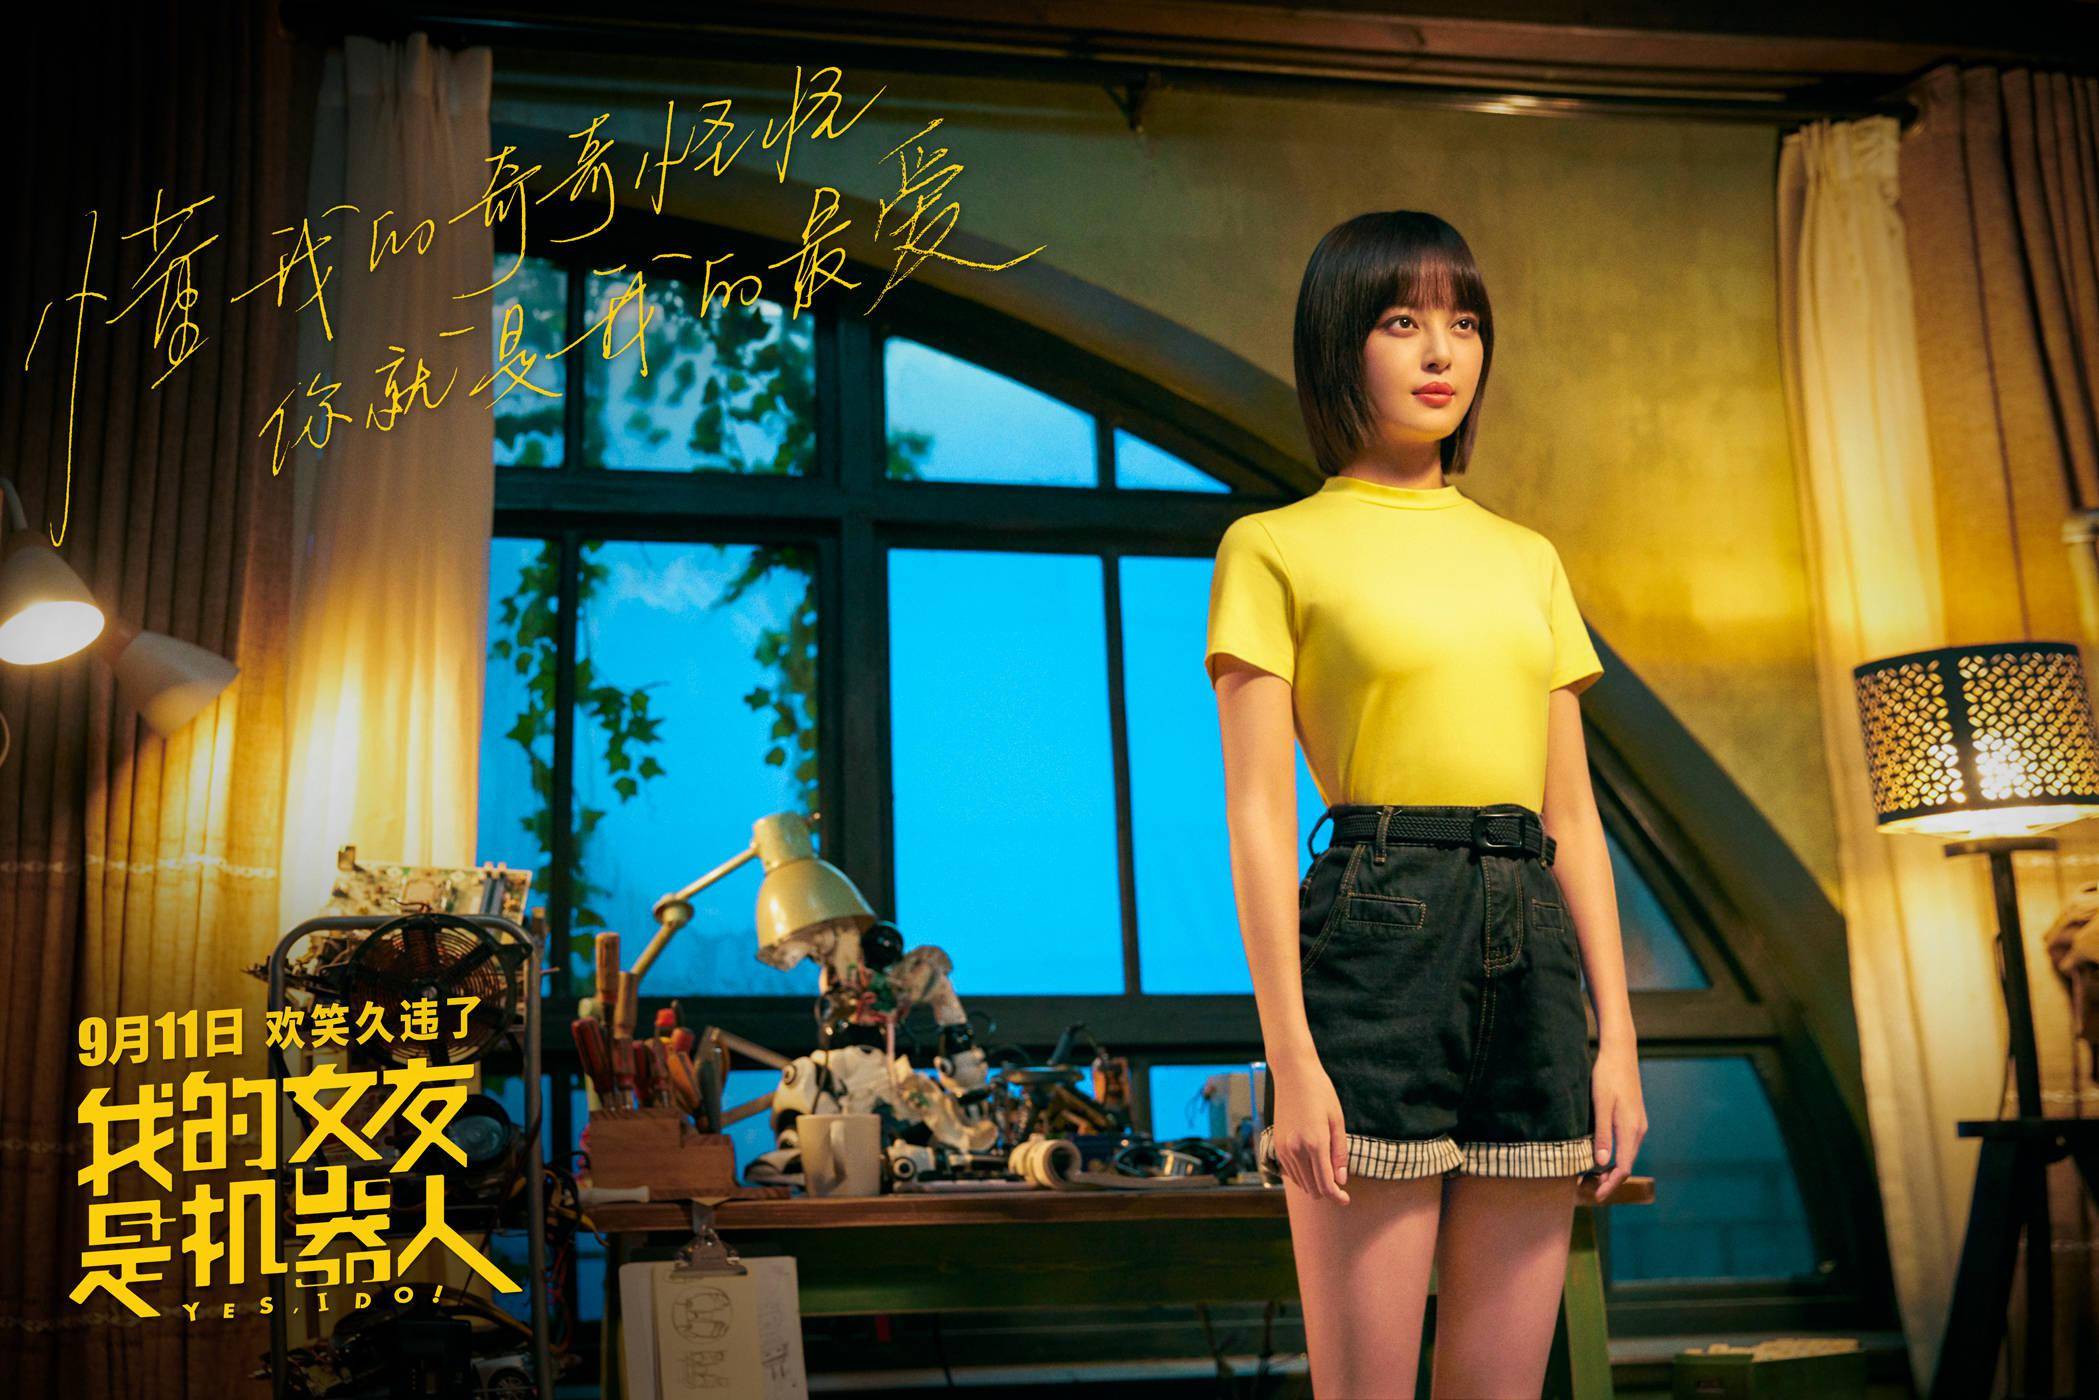 电影《我的女友是机器人》发布海报 包贝尔辛芷蕾"甜蜜"逛街极具反差